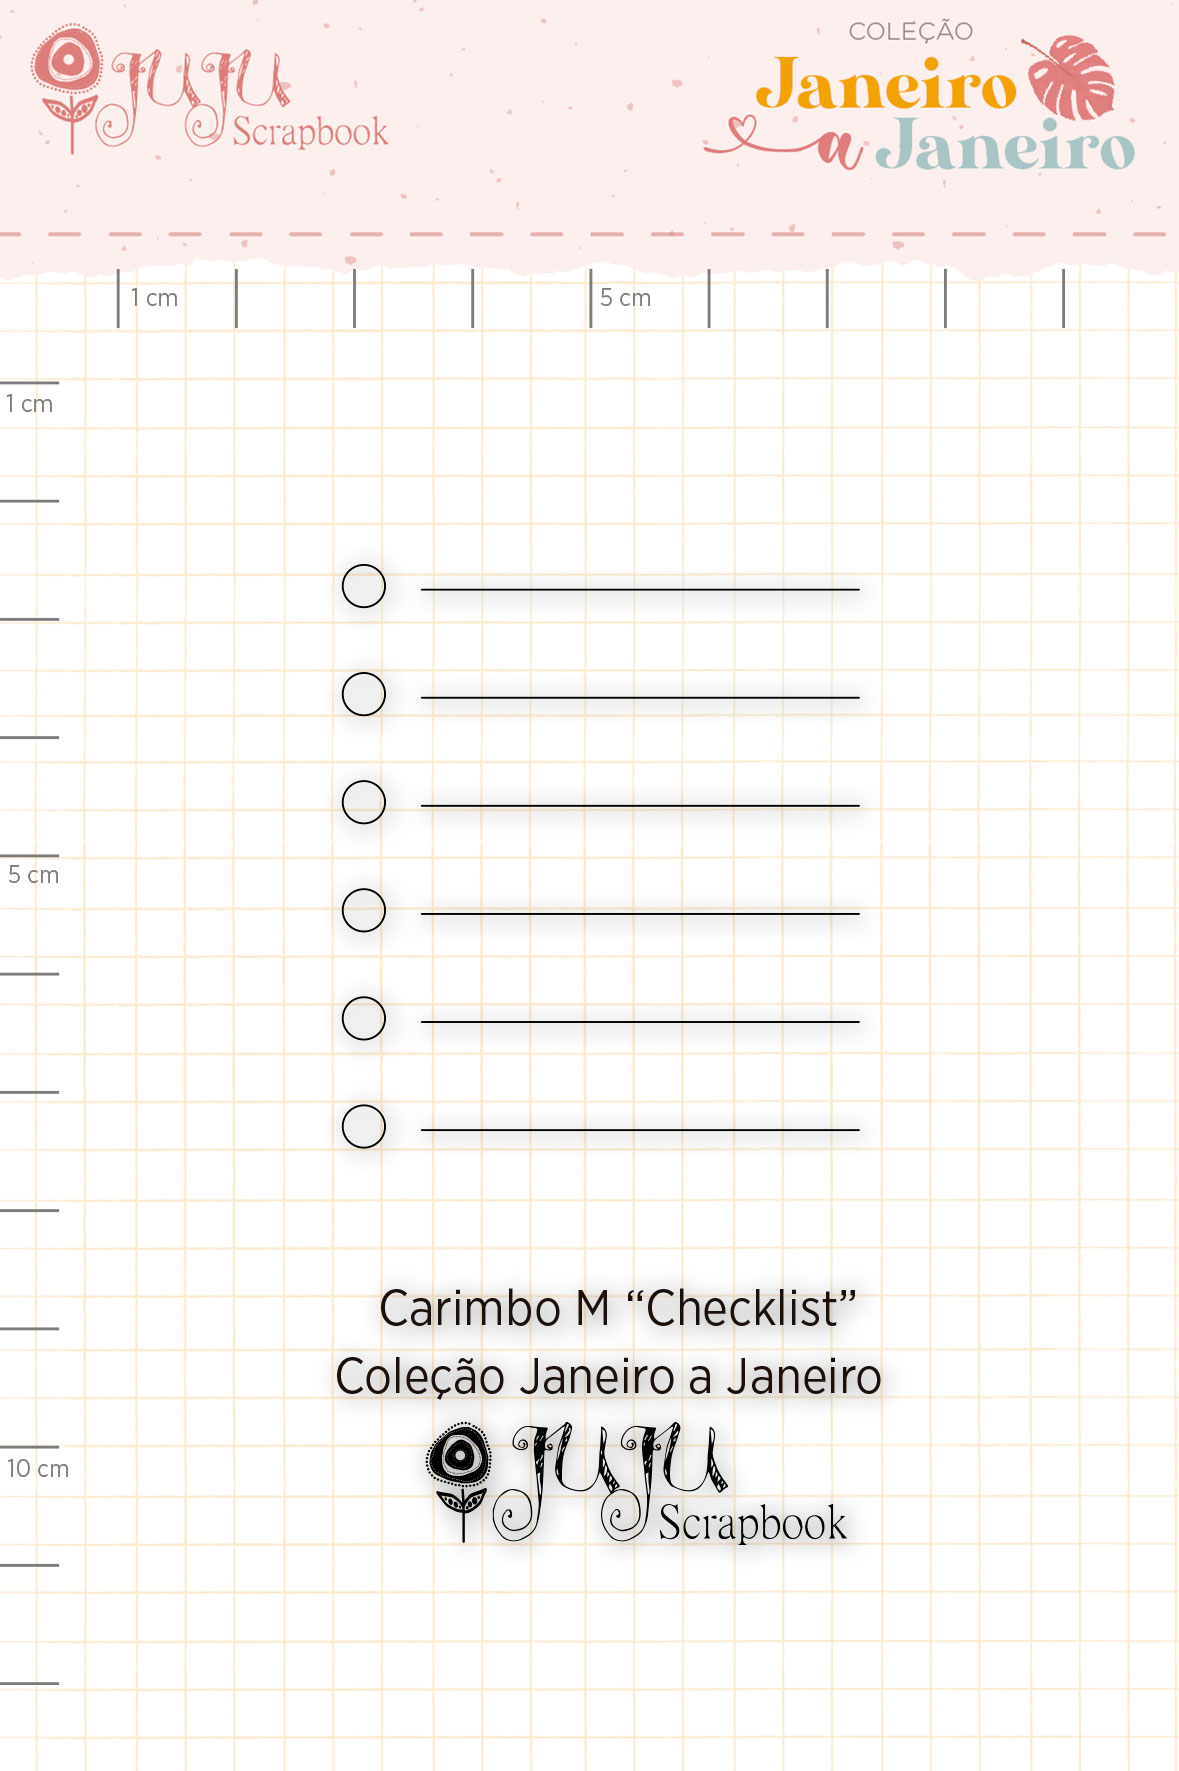 Carimbo M Checklist - Coleção Janeiro a Janeiro - JuJu Scrapbook  - JuJu Scrapbook